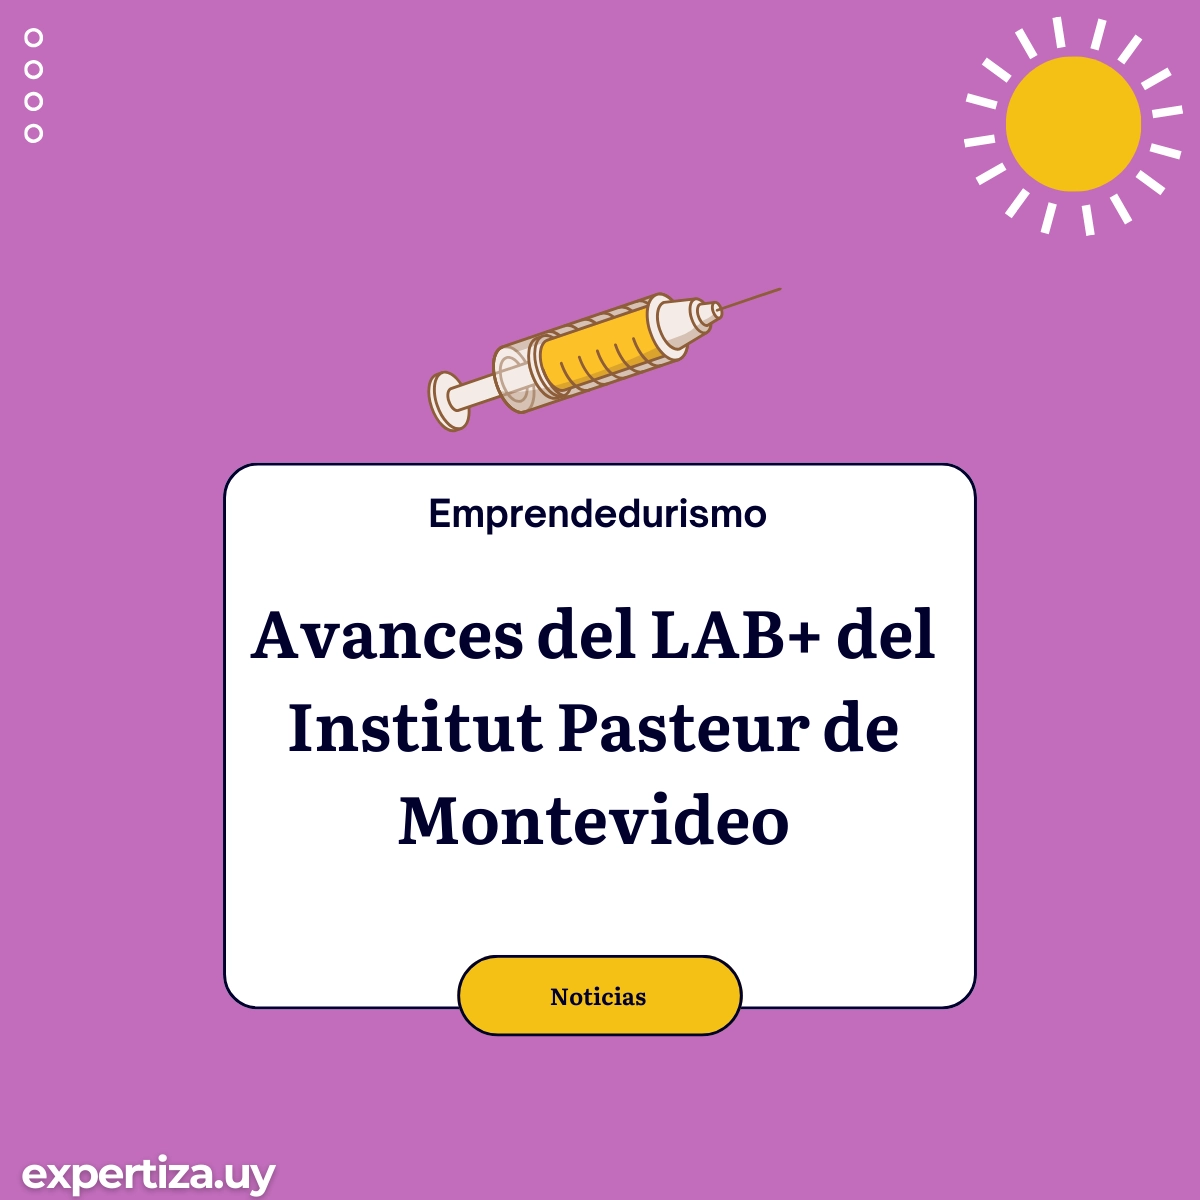 Avances del LAB+ del Institut Pasteur de Montevideo.